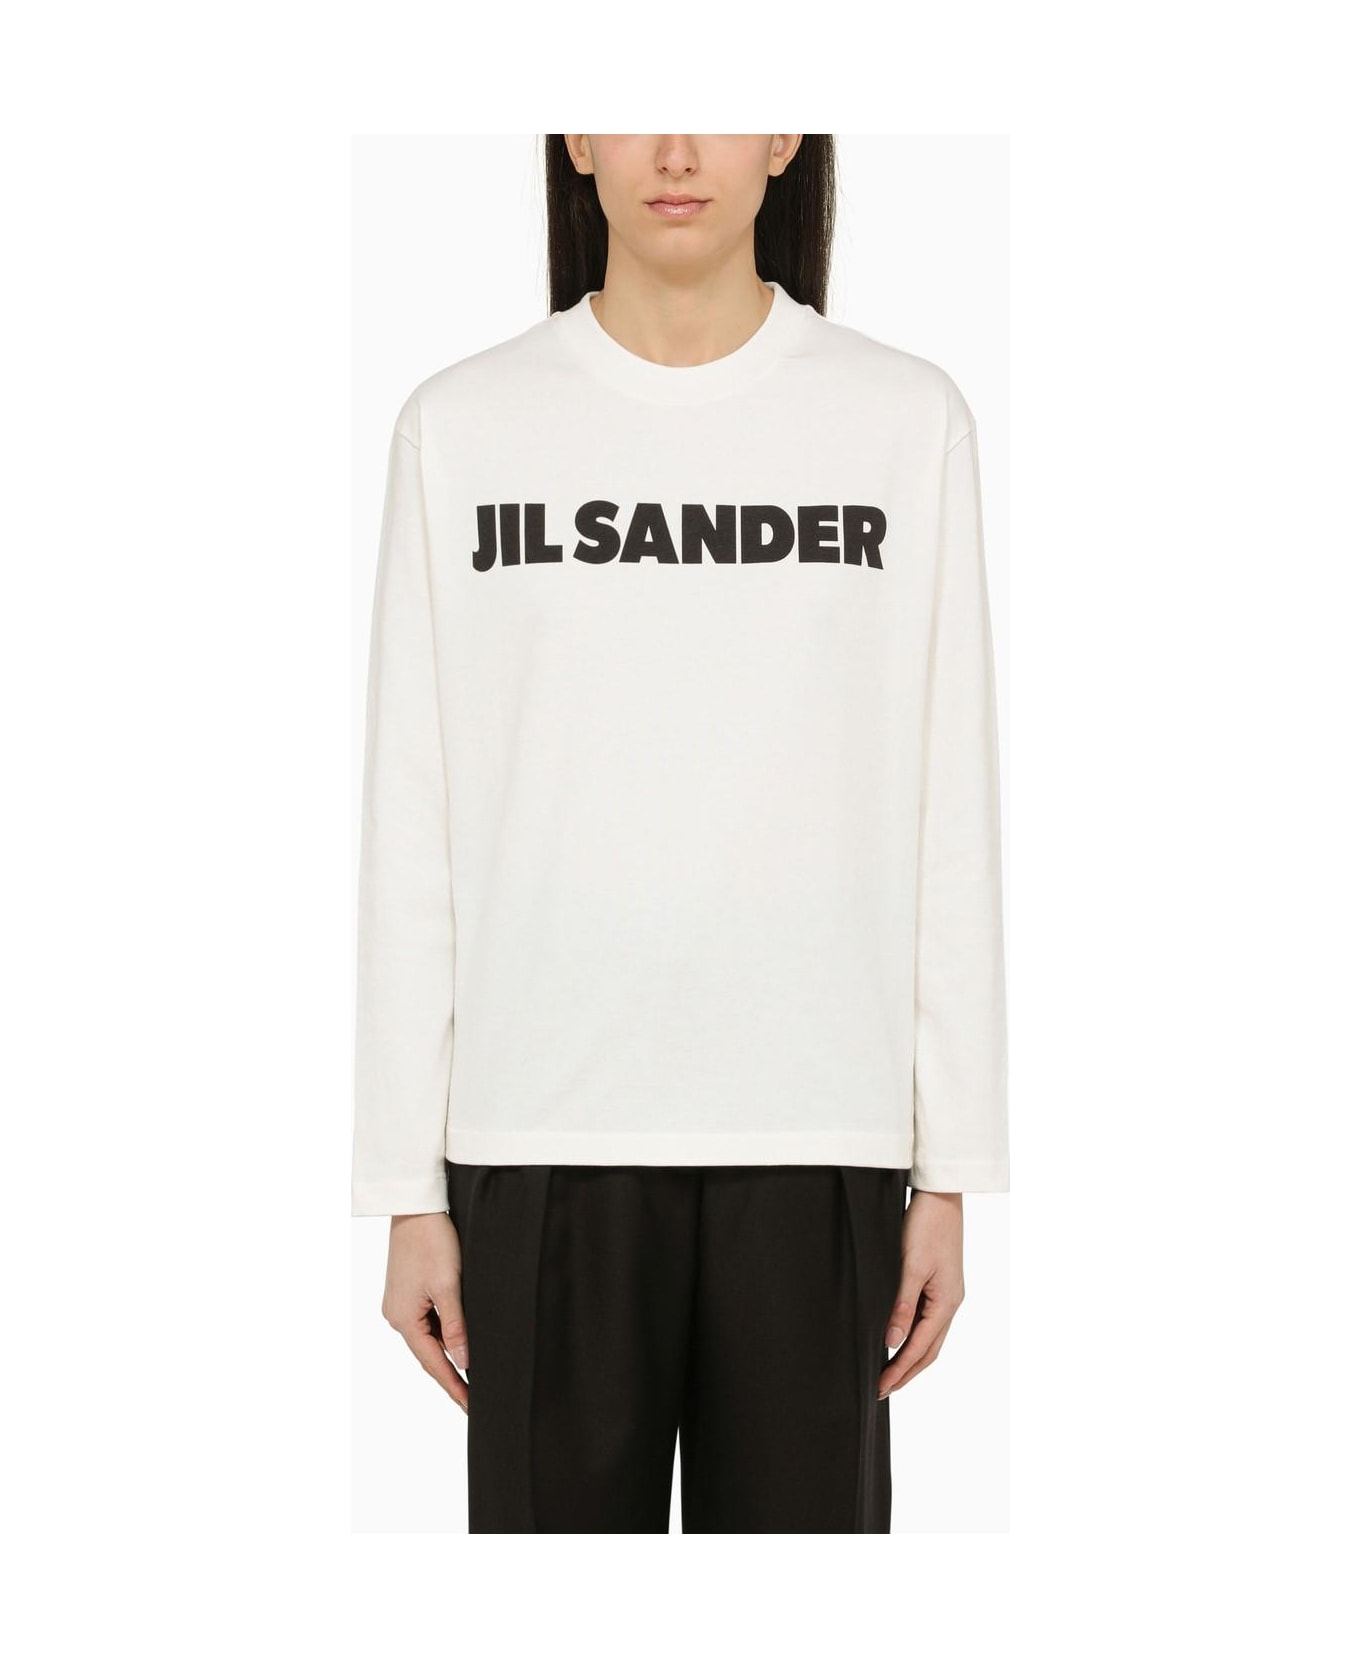 Jil Sander White Long-sleeved T-shirt